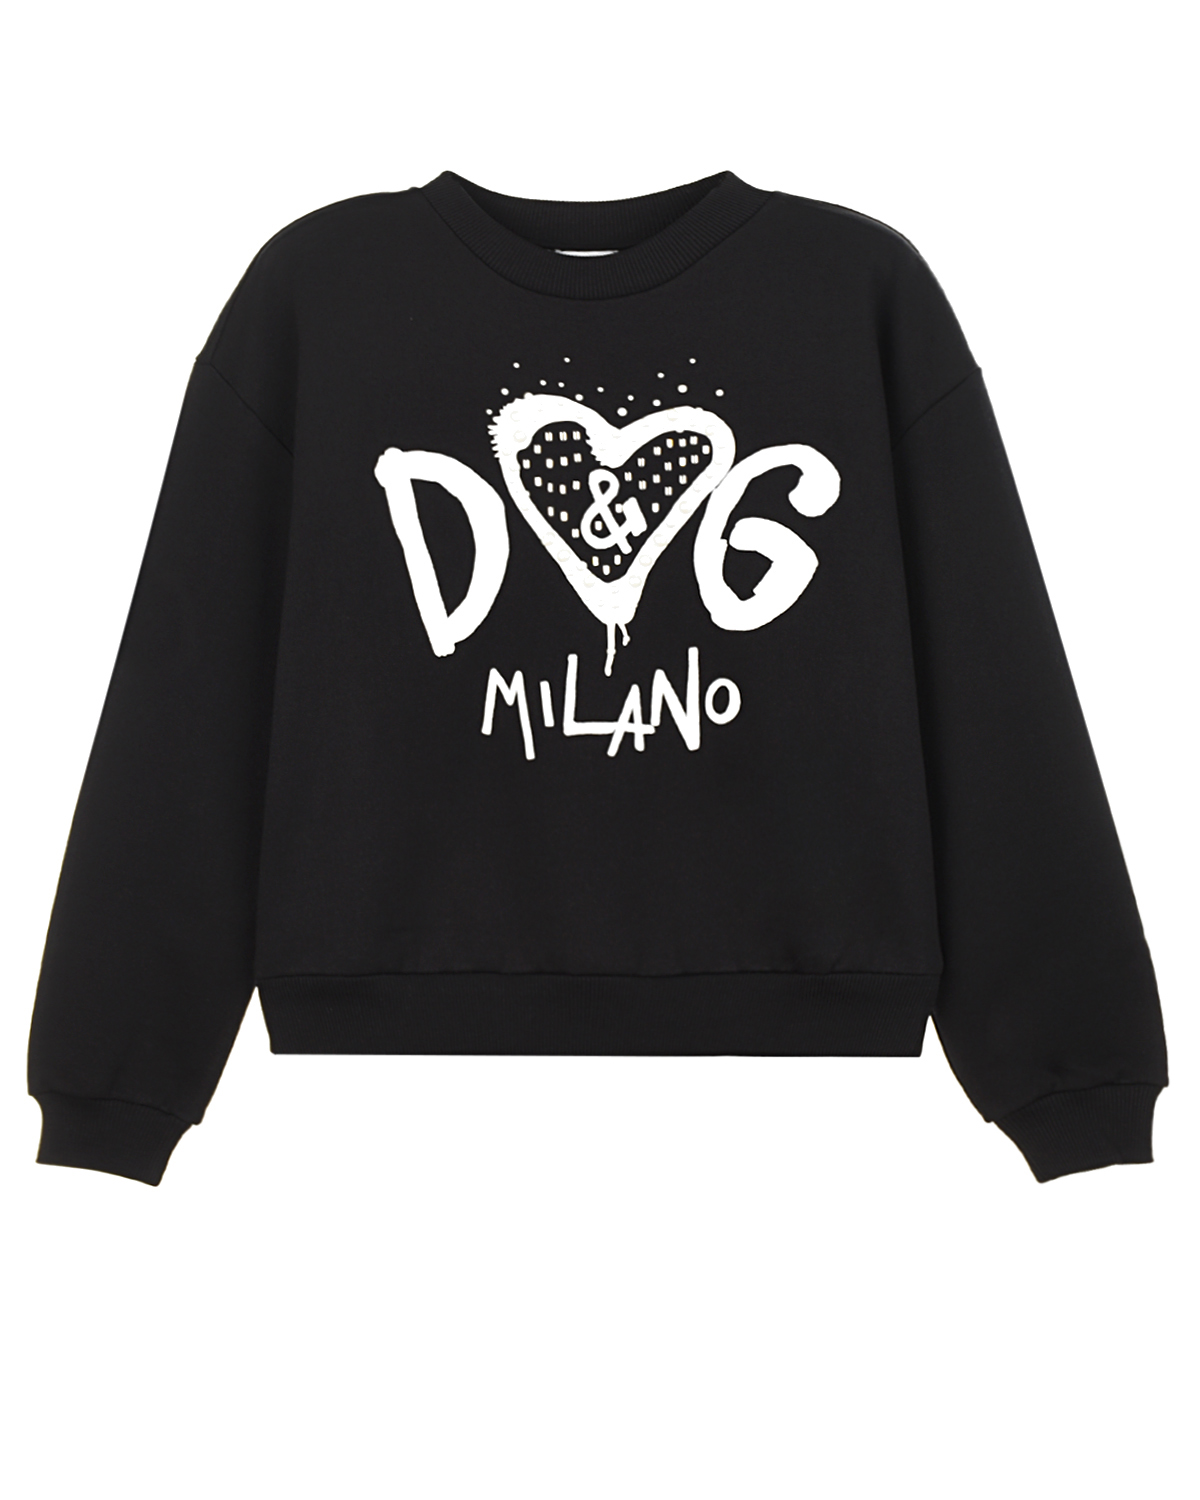 Черный свитшот с принтом "DG Milano" Dolce&Gabbana детский, размер 98 - фото 1